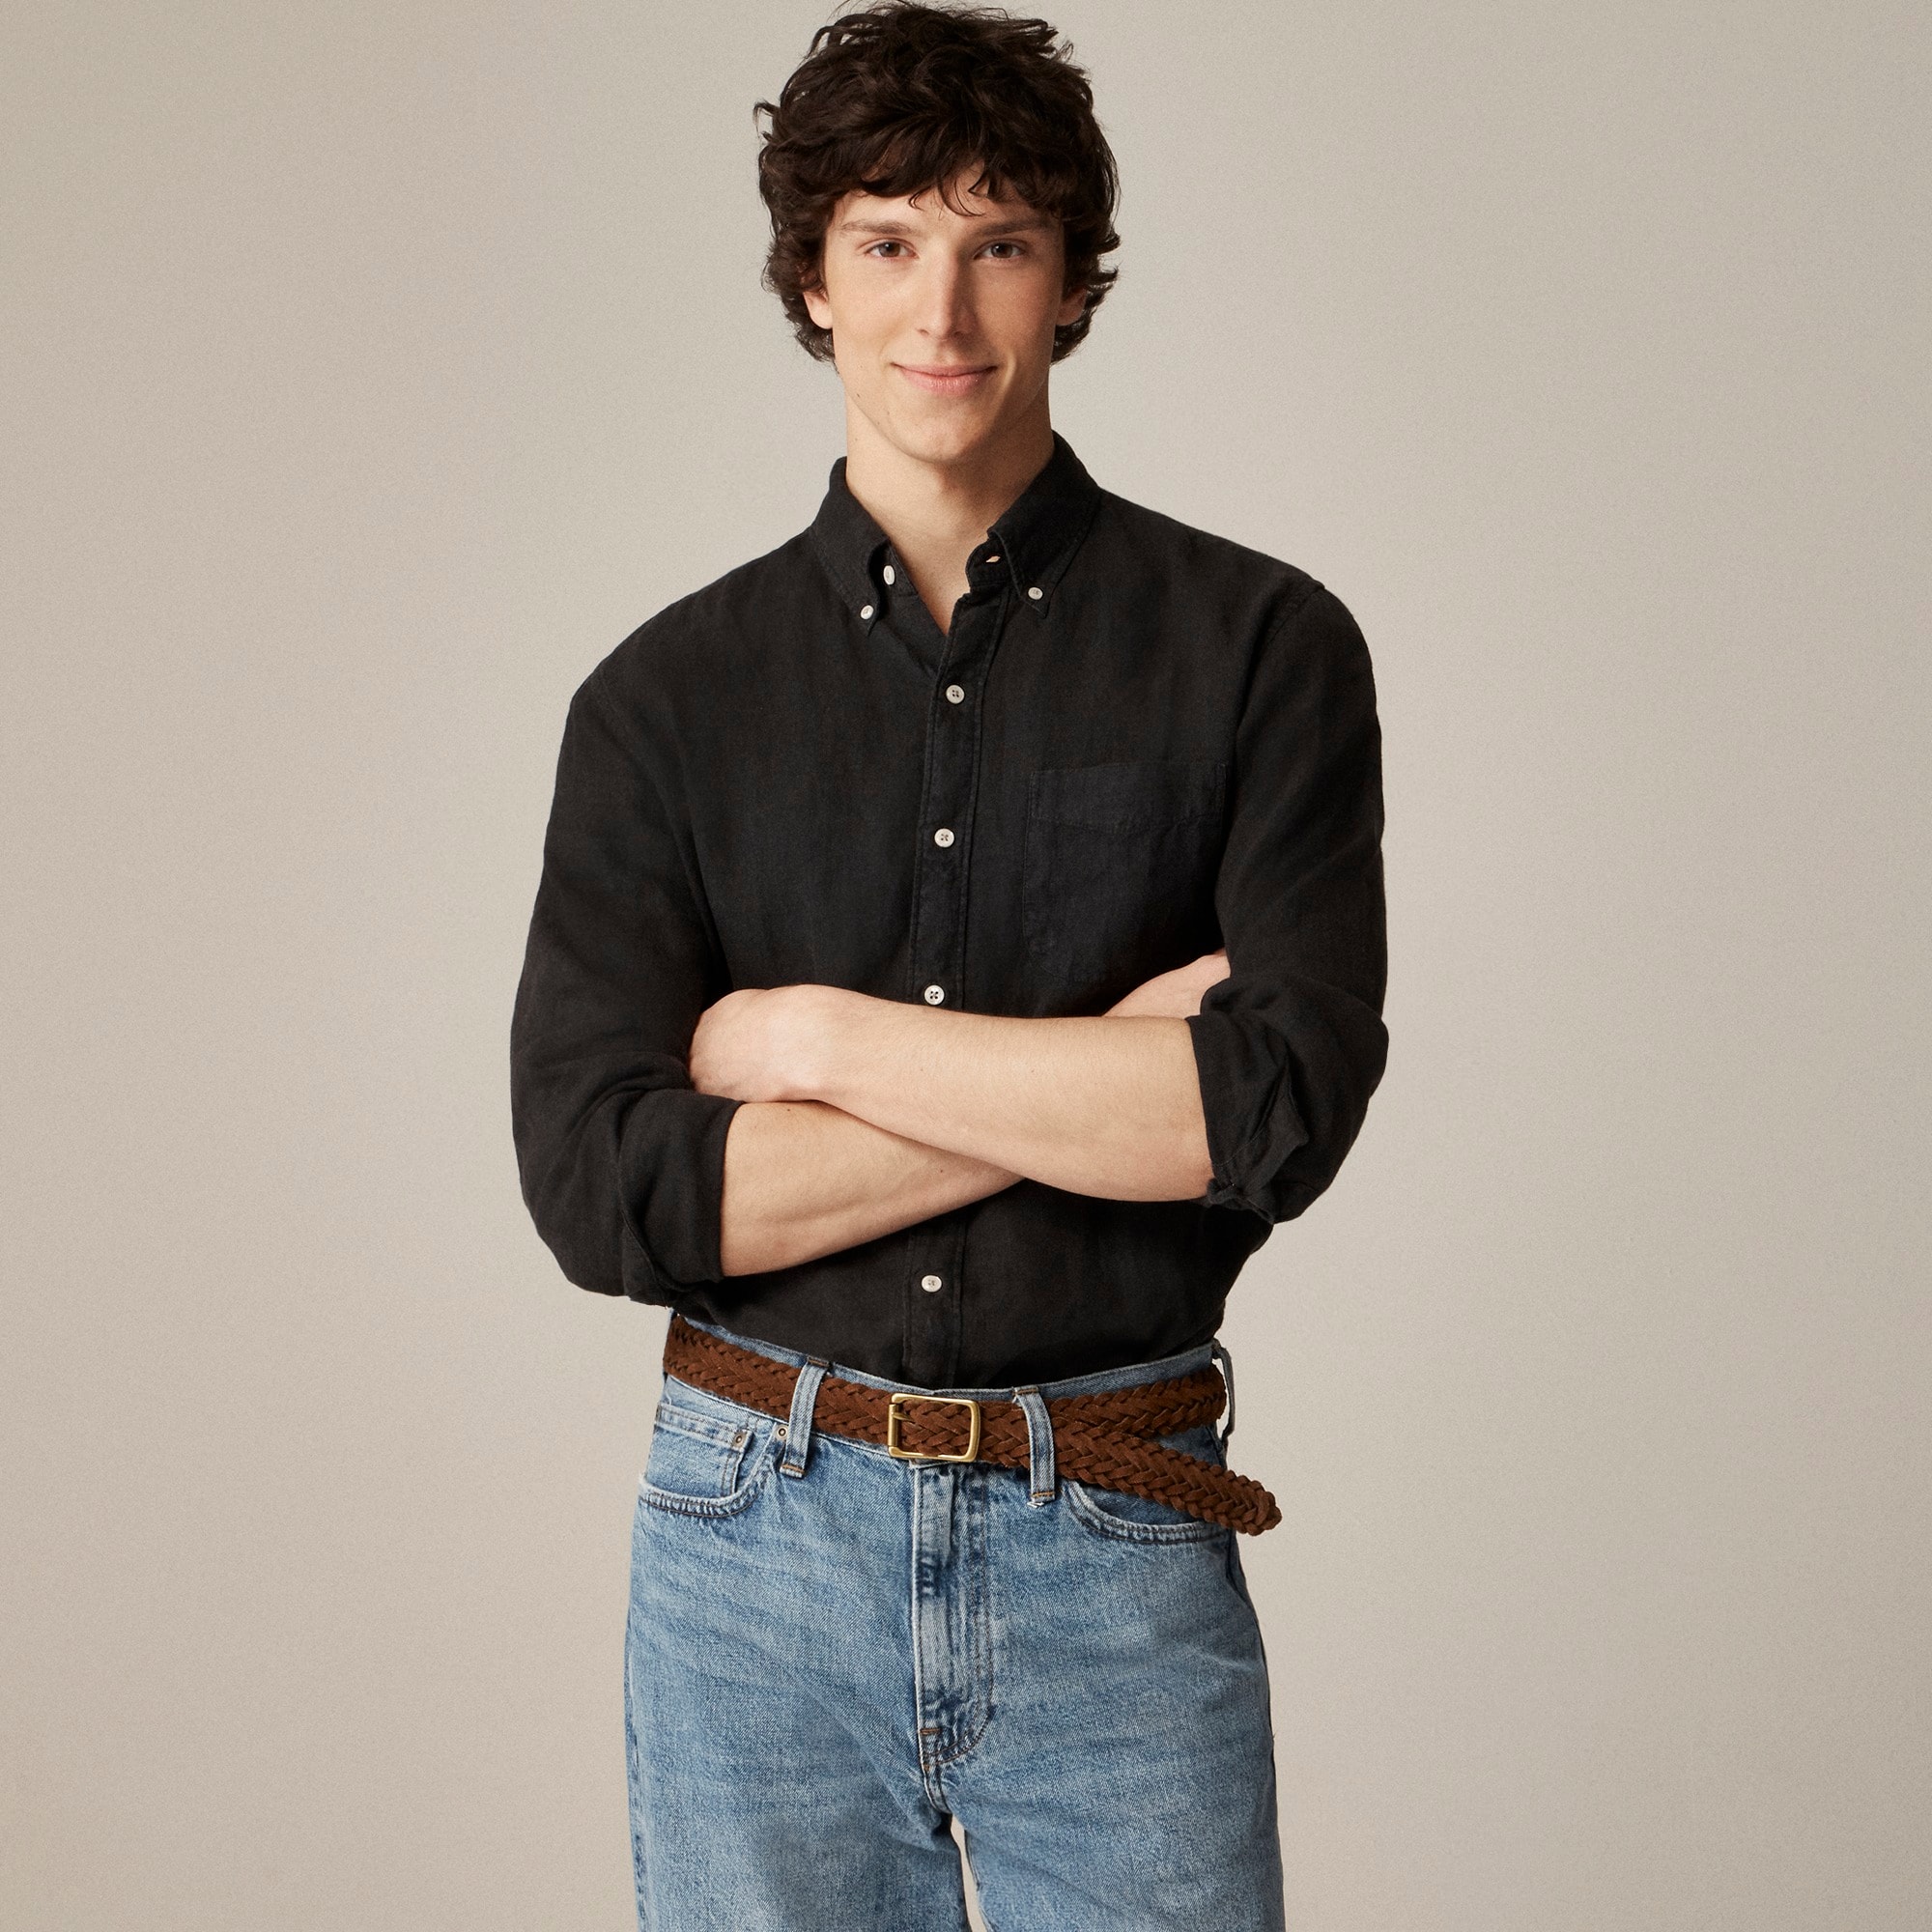  Tall Baird McNutt garment-dyed Irish linen shirt